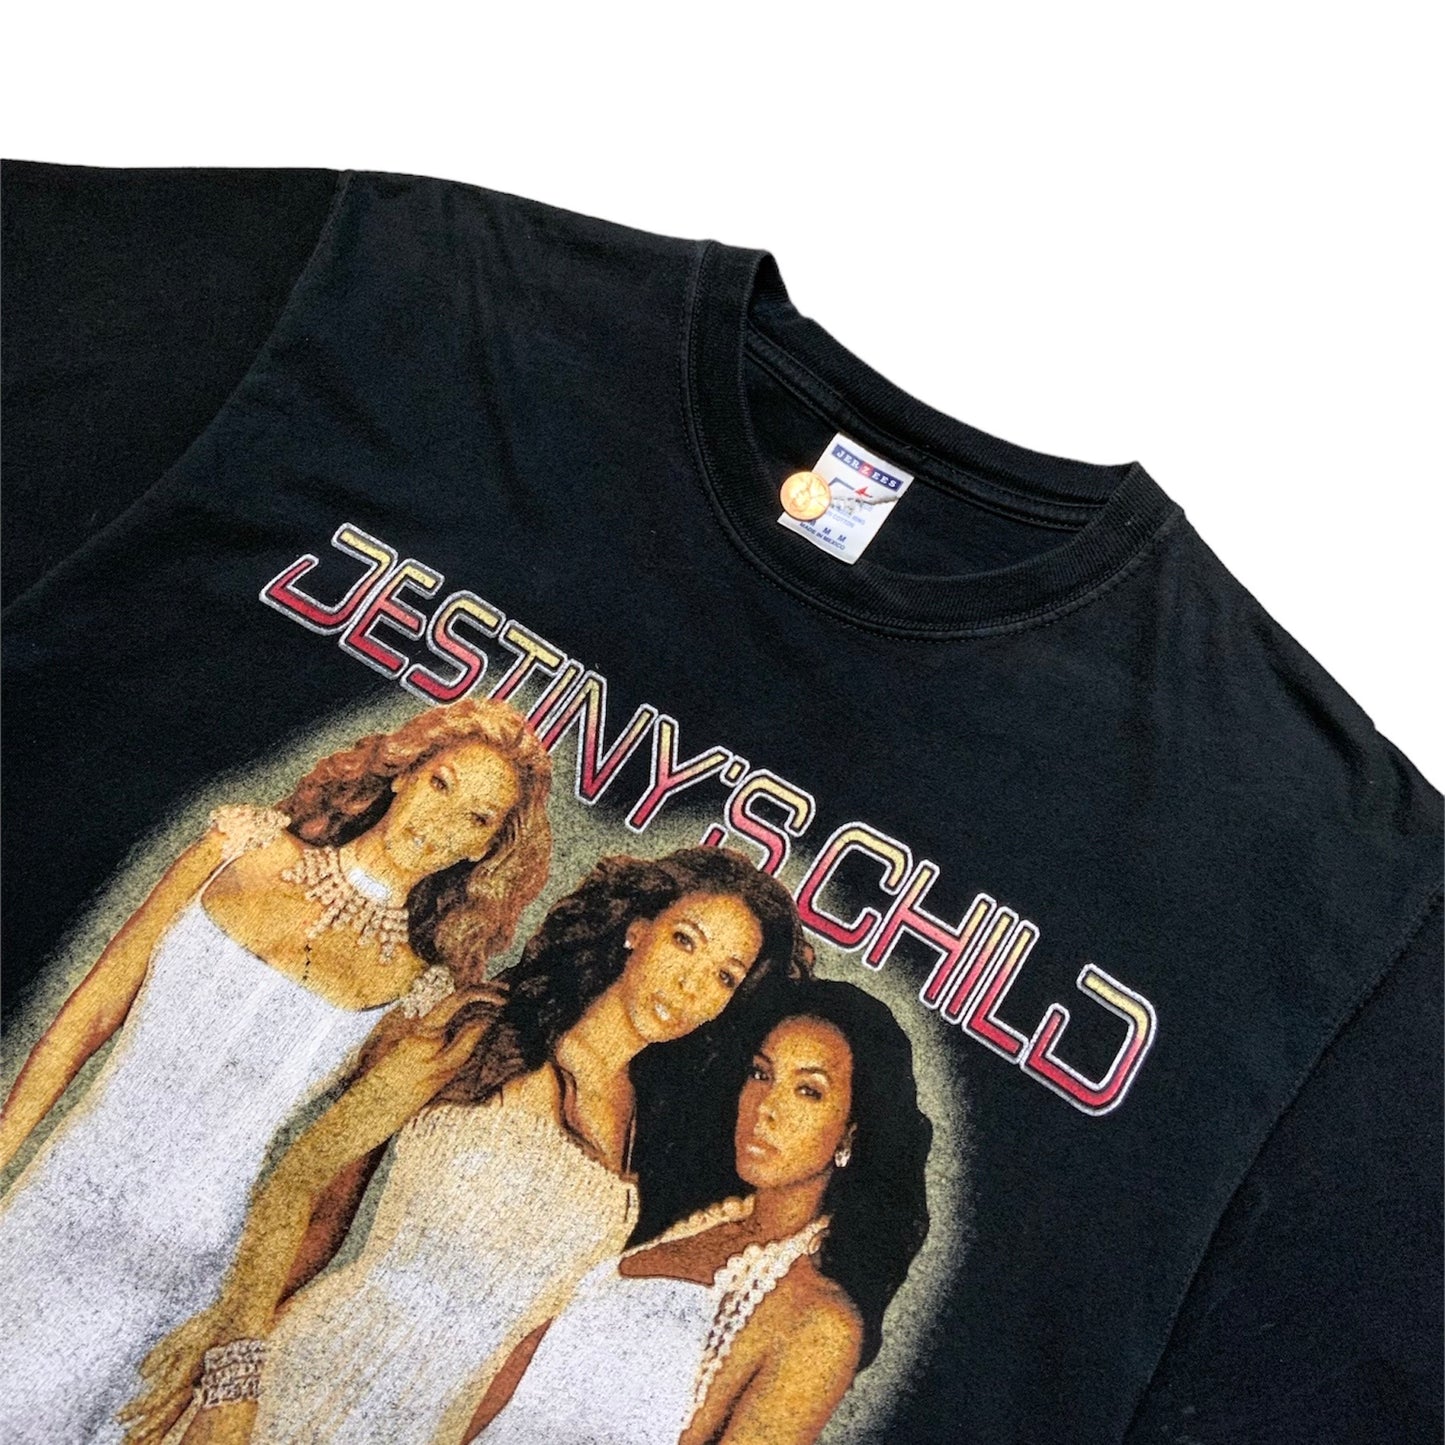 2005 Destiny’s Child Tour T-Shirt